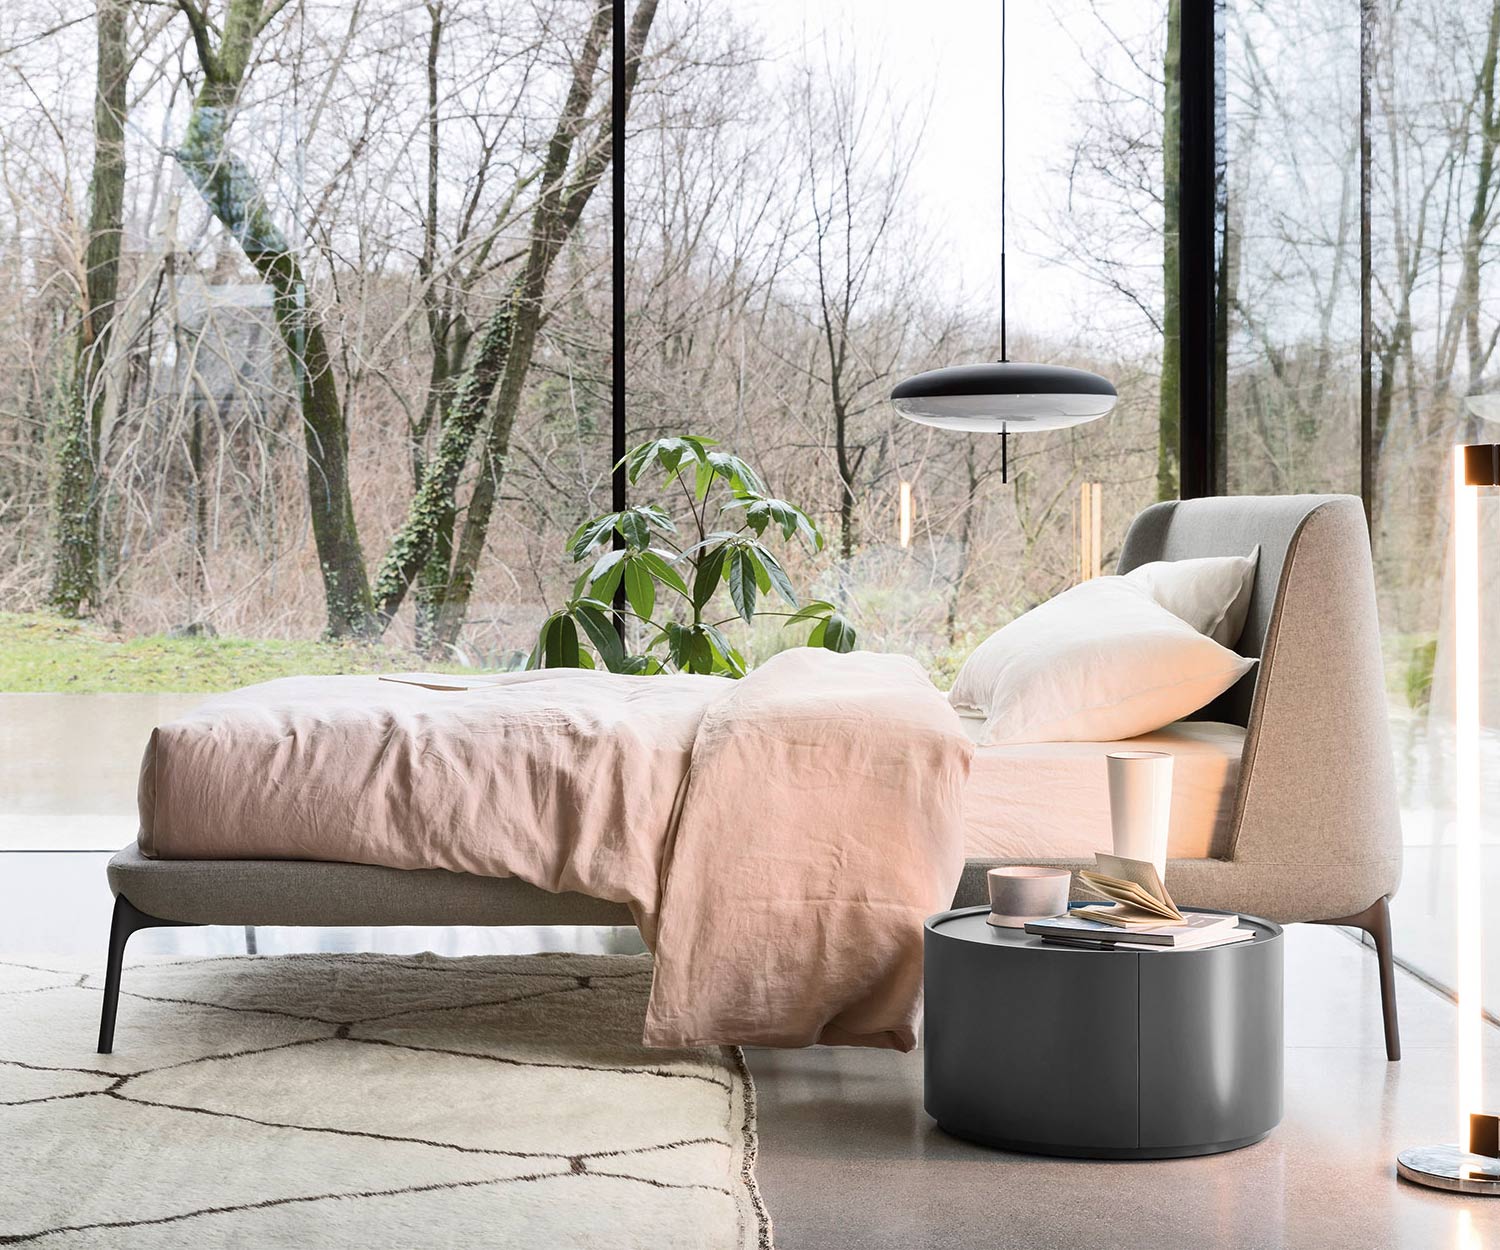 Table d'appoint ronde design Allout de Novamobili dans la chambre à coucher